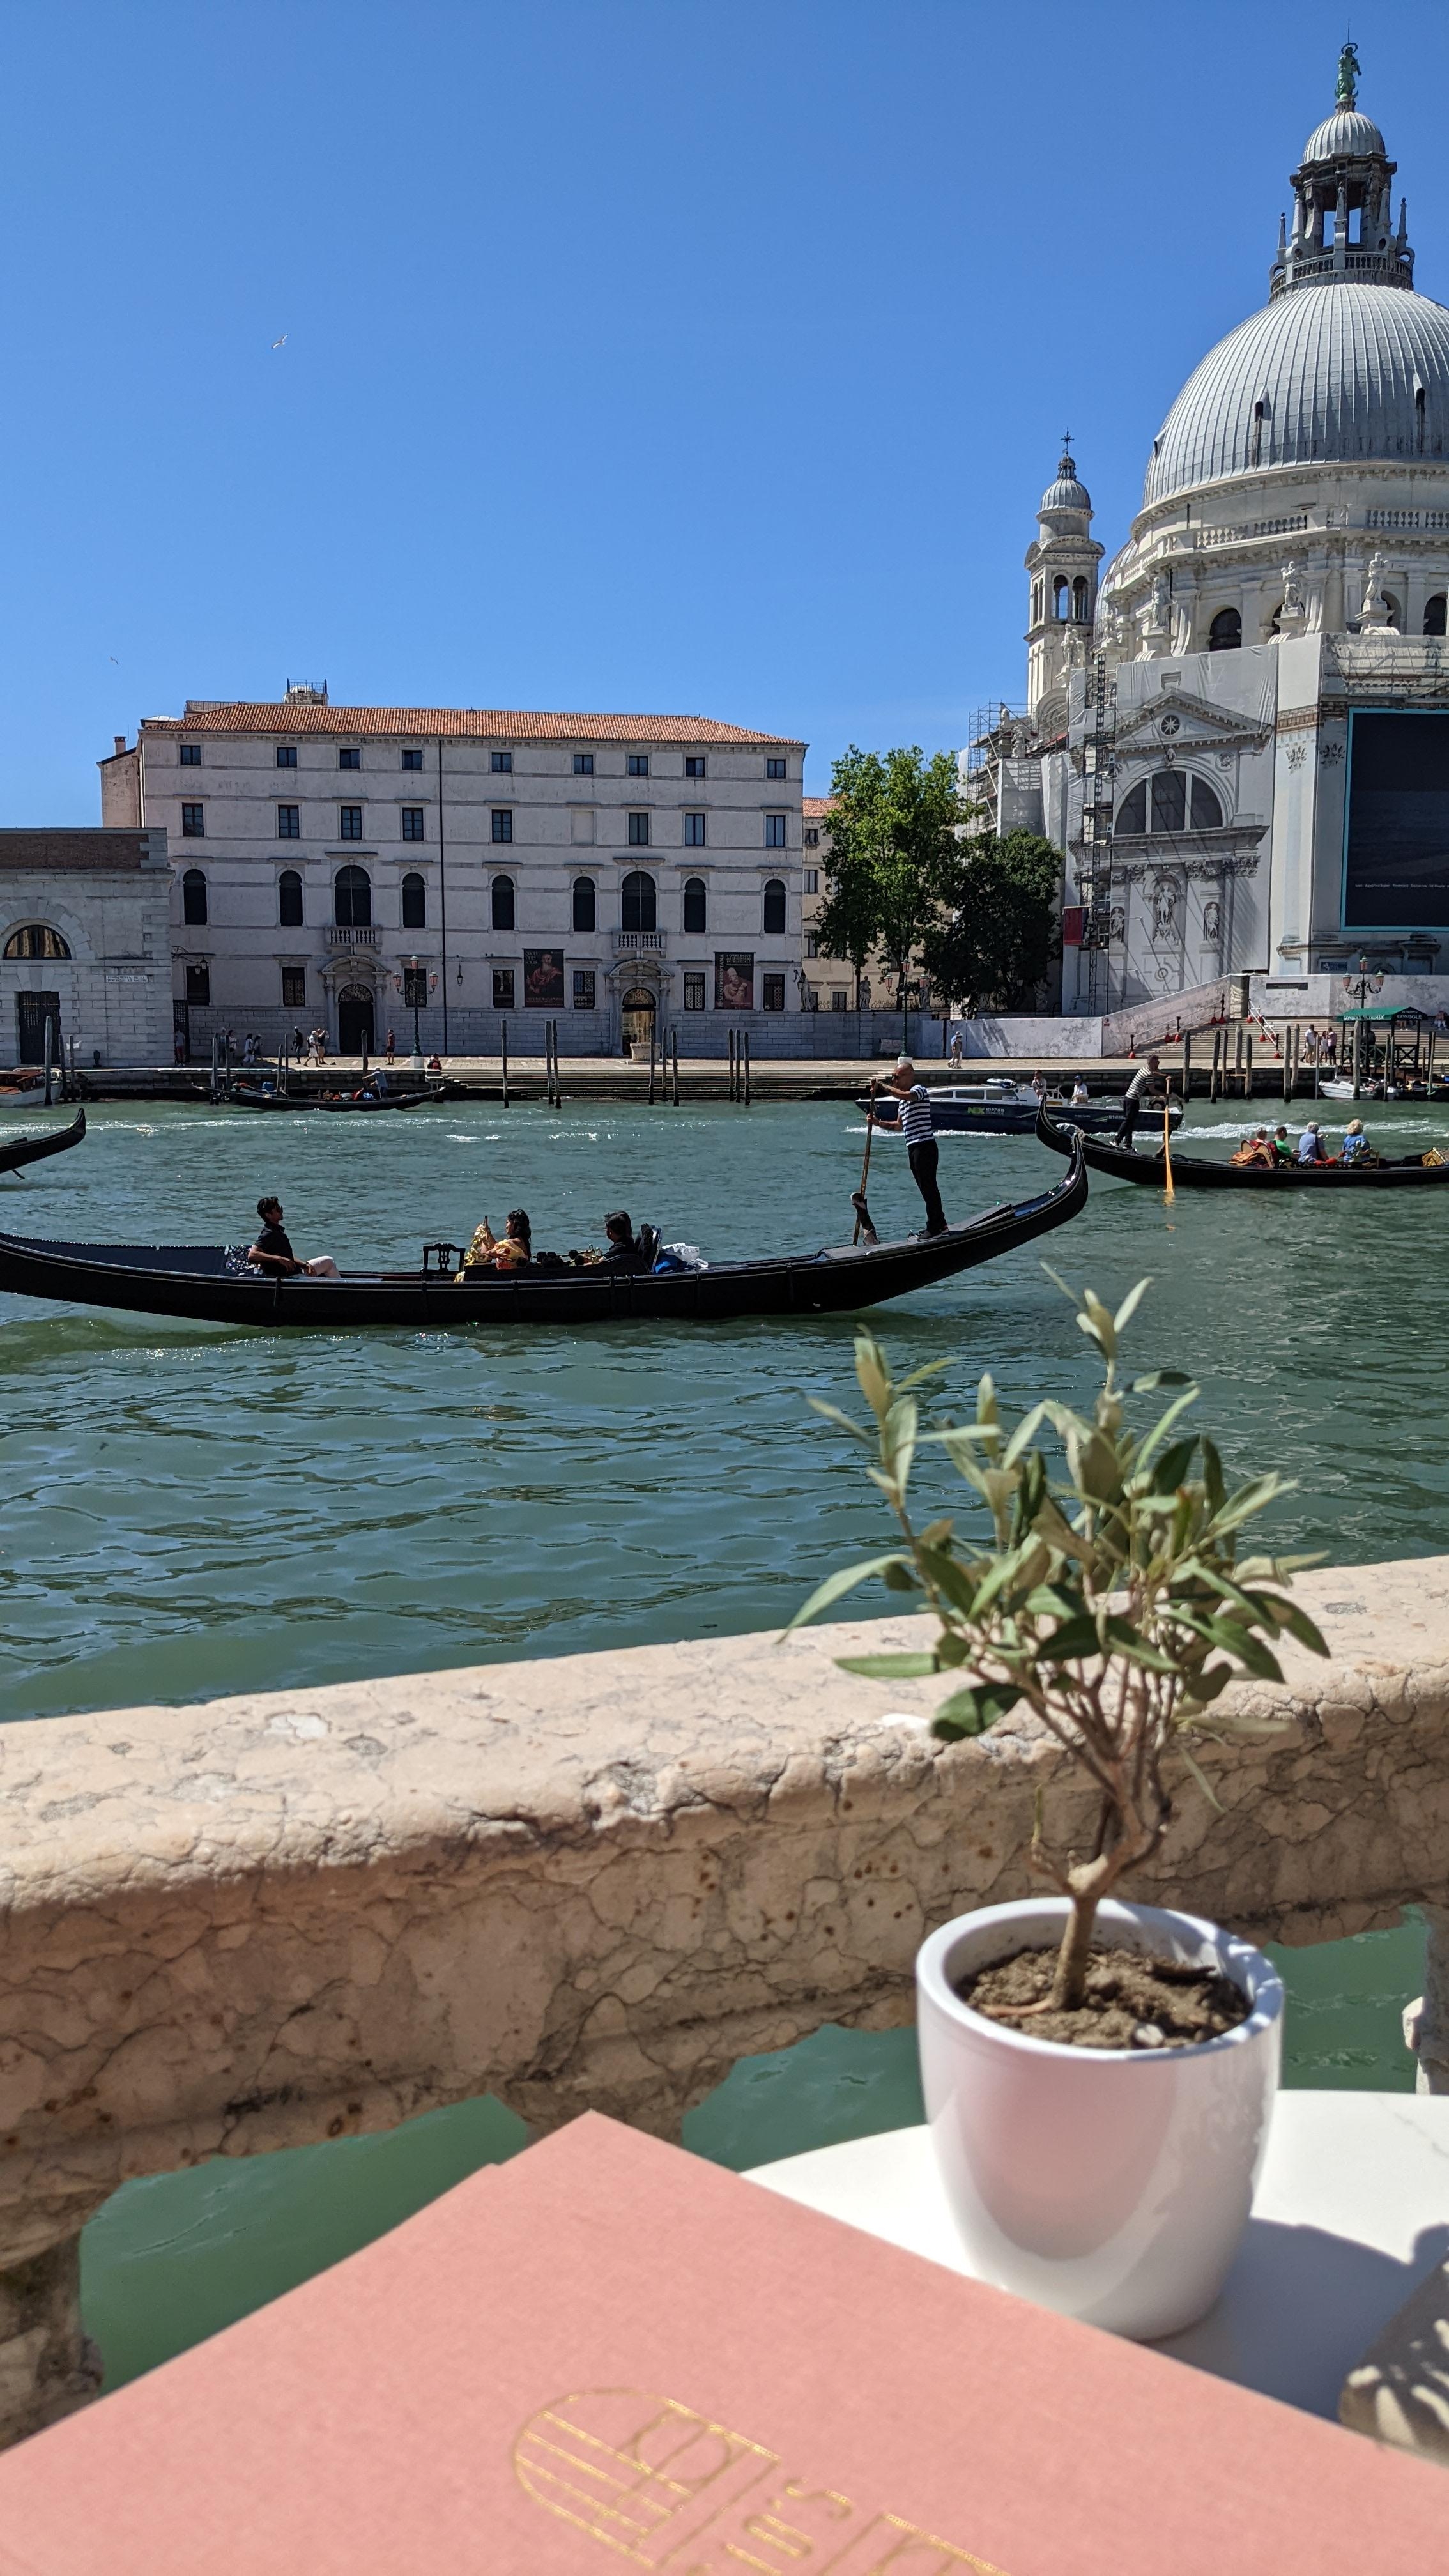 Wir waren vor ein paar Tagen in Venedig. Es war herrlich ☀️
#urlaub #italien